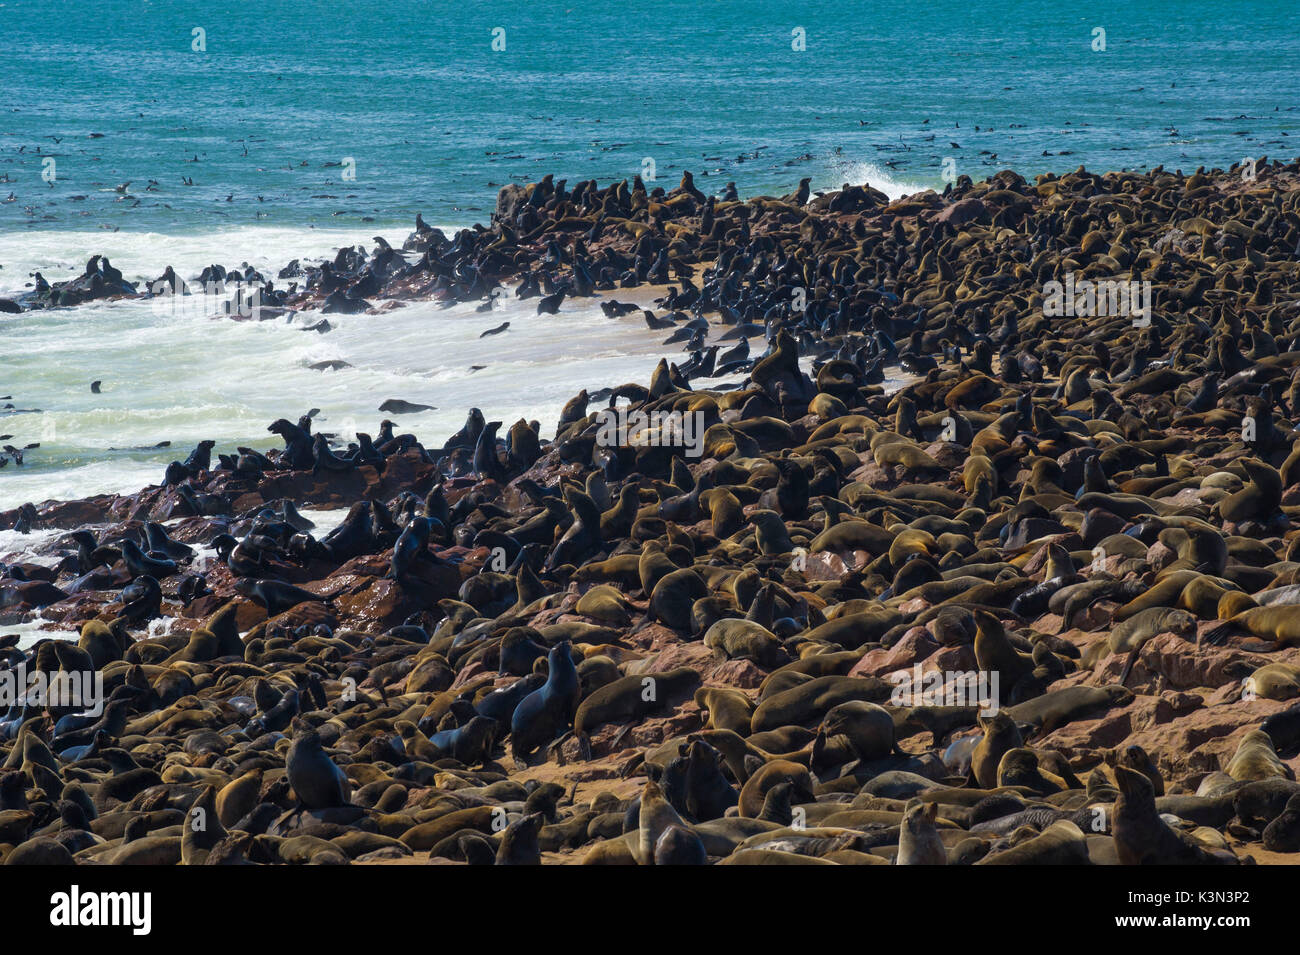 Cape Cross, Skelettküste, Namibia, Afrika. Dichtungen Kolonie. Stockfoto